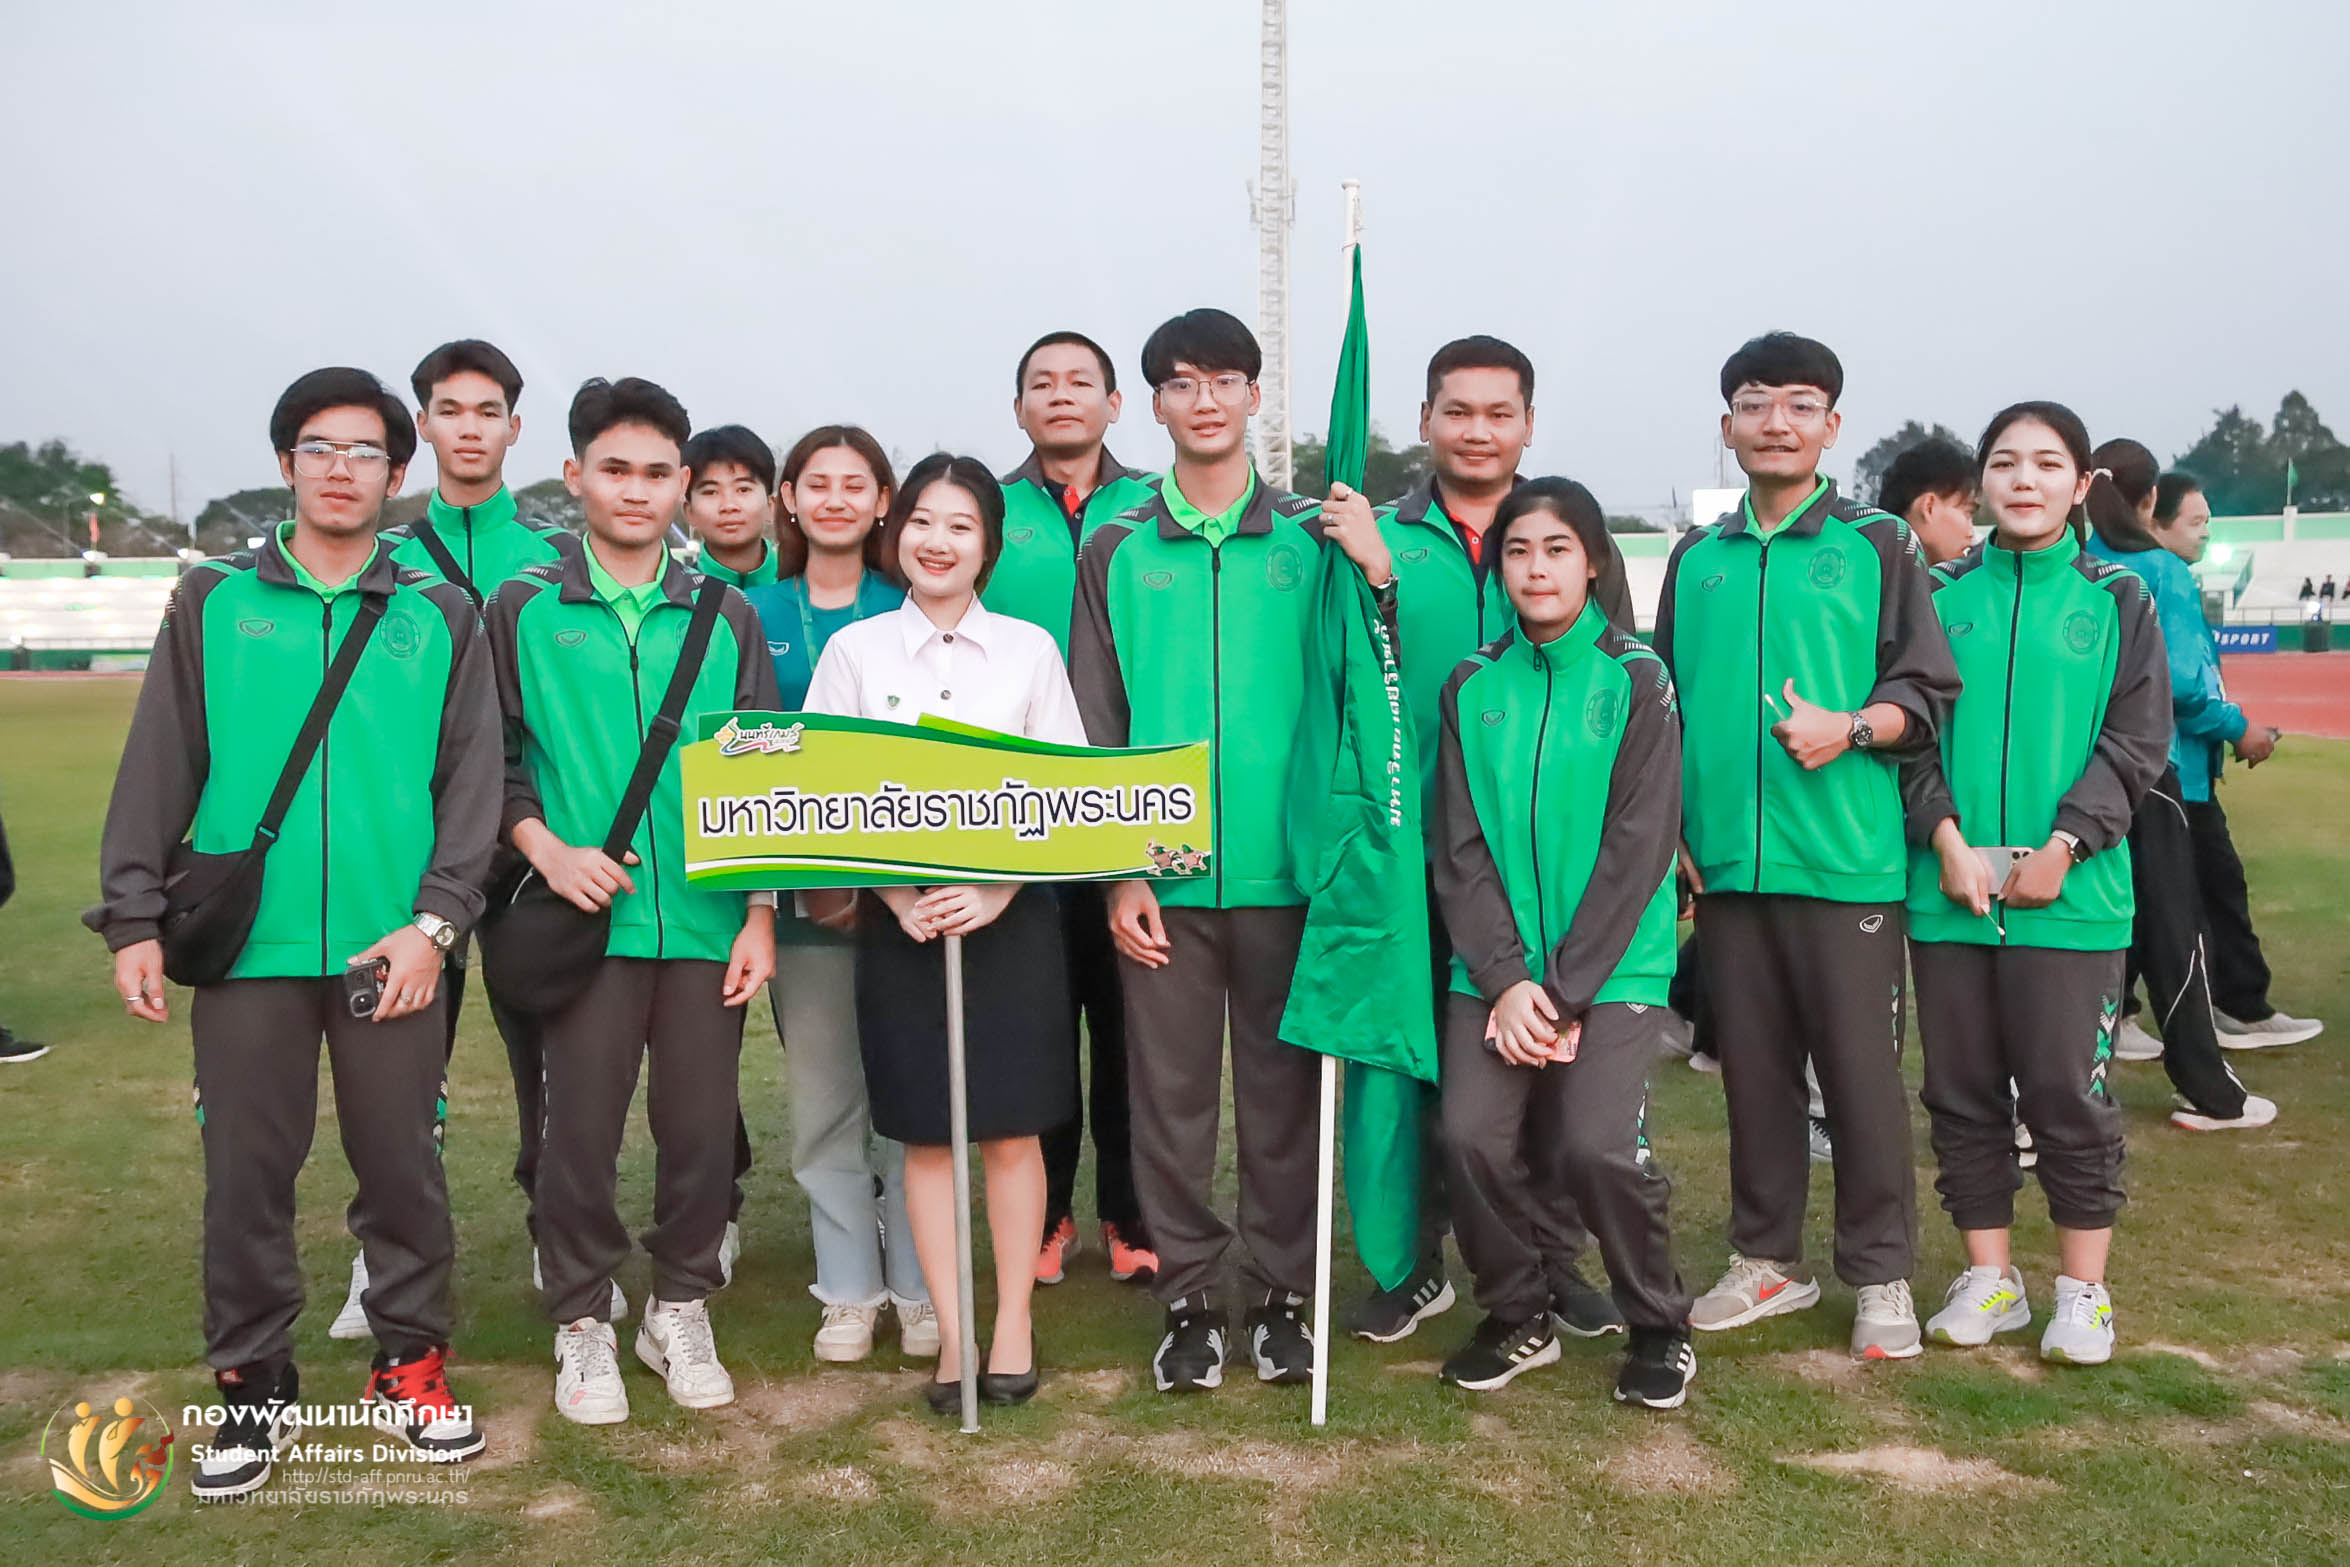 พิธีเปิดการแข่งขันกีฬามหาวิทยาลัยแห่งประเทศไทย ครั้งที่ 49 “นนทรีเกมส์ 2567” ระหว่างวันที่ 27 มกราคม-5 กุมภาพันธ์ 2567 ณ สนามกีฬากลางจังหวัดนครปฐม มหาวิทยาลัยเกษตรศาสตร์ วิทยาเขตกําแพงแสน จังหวัดนครปฐม